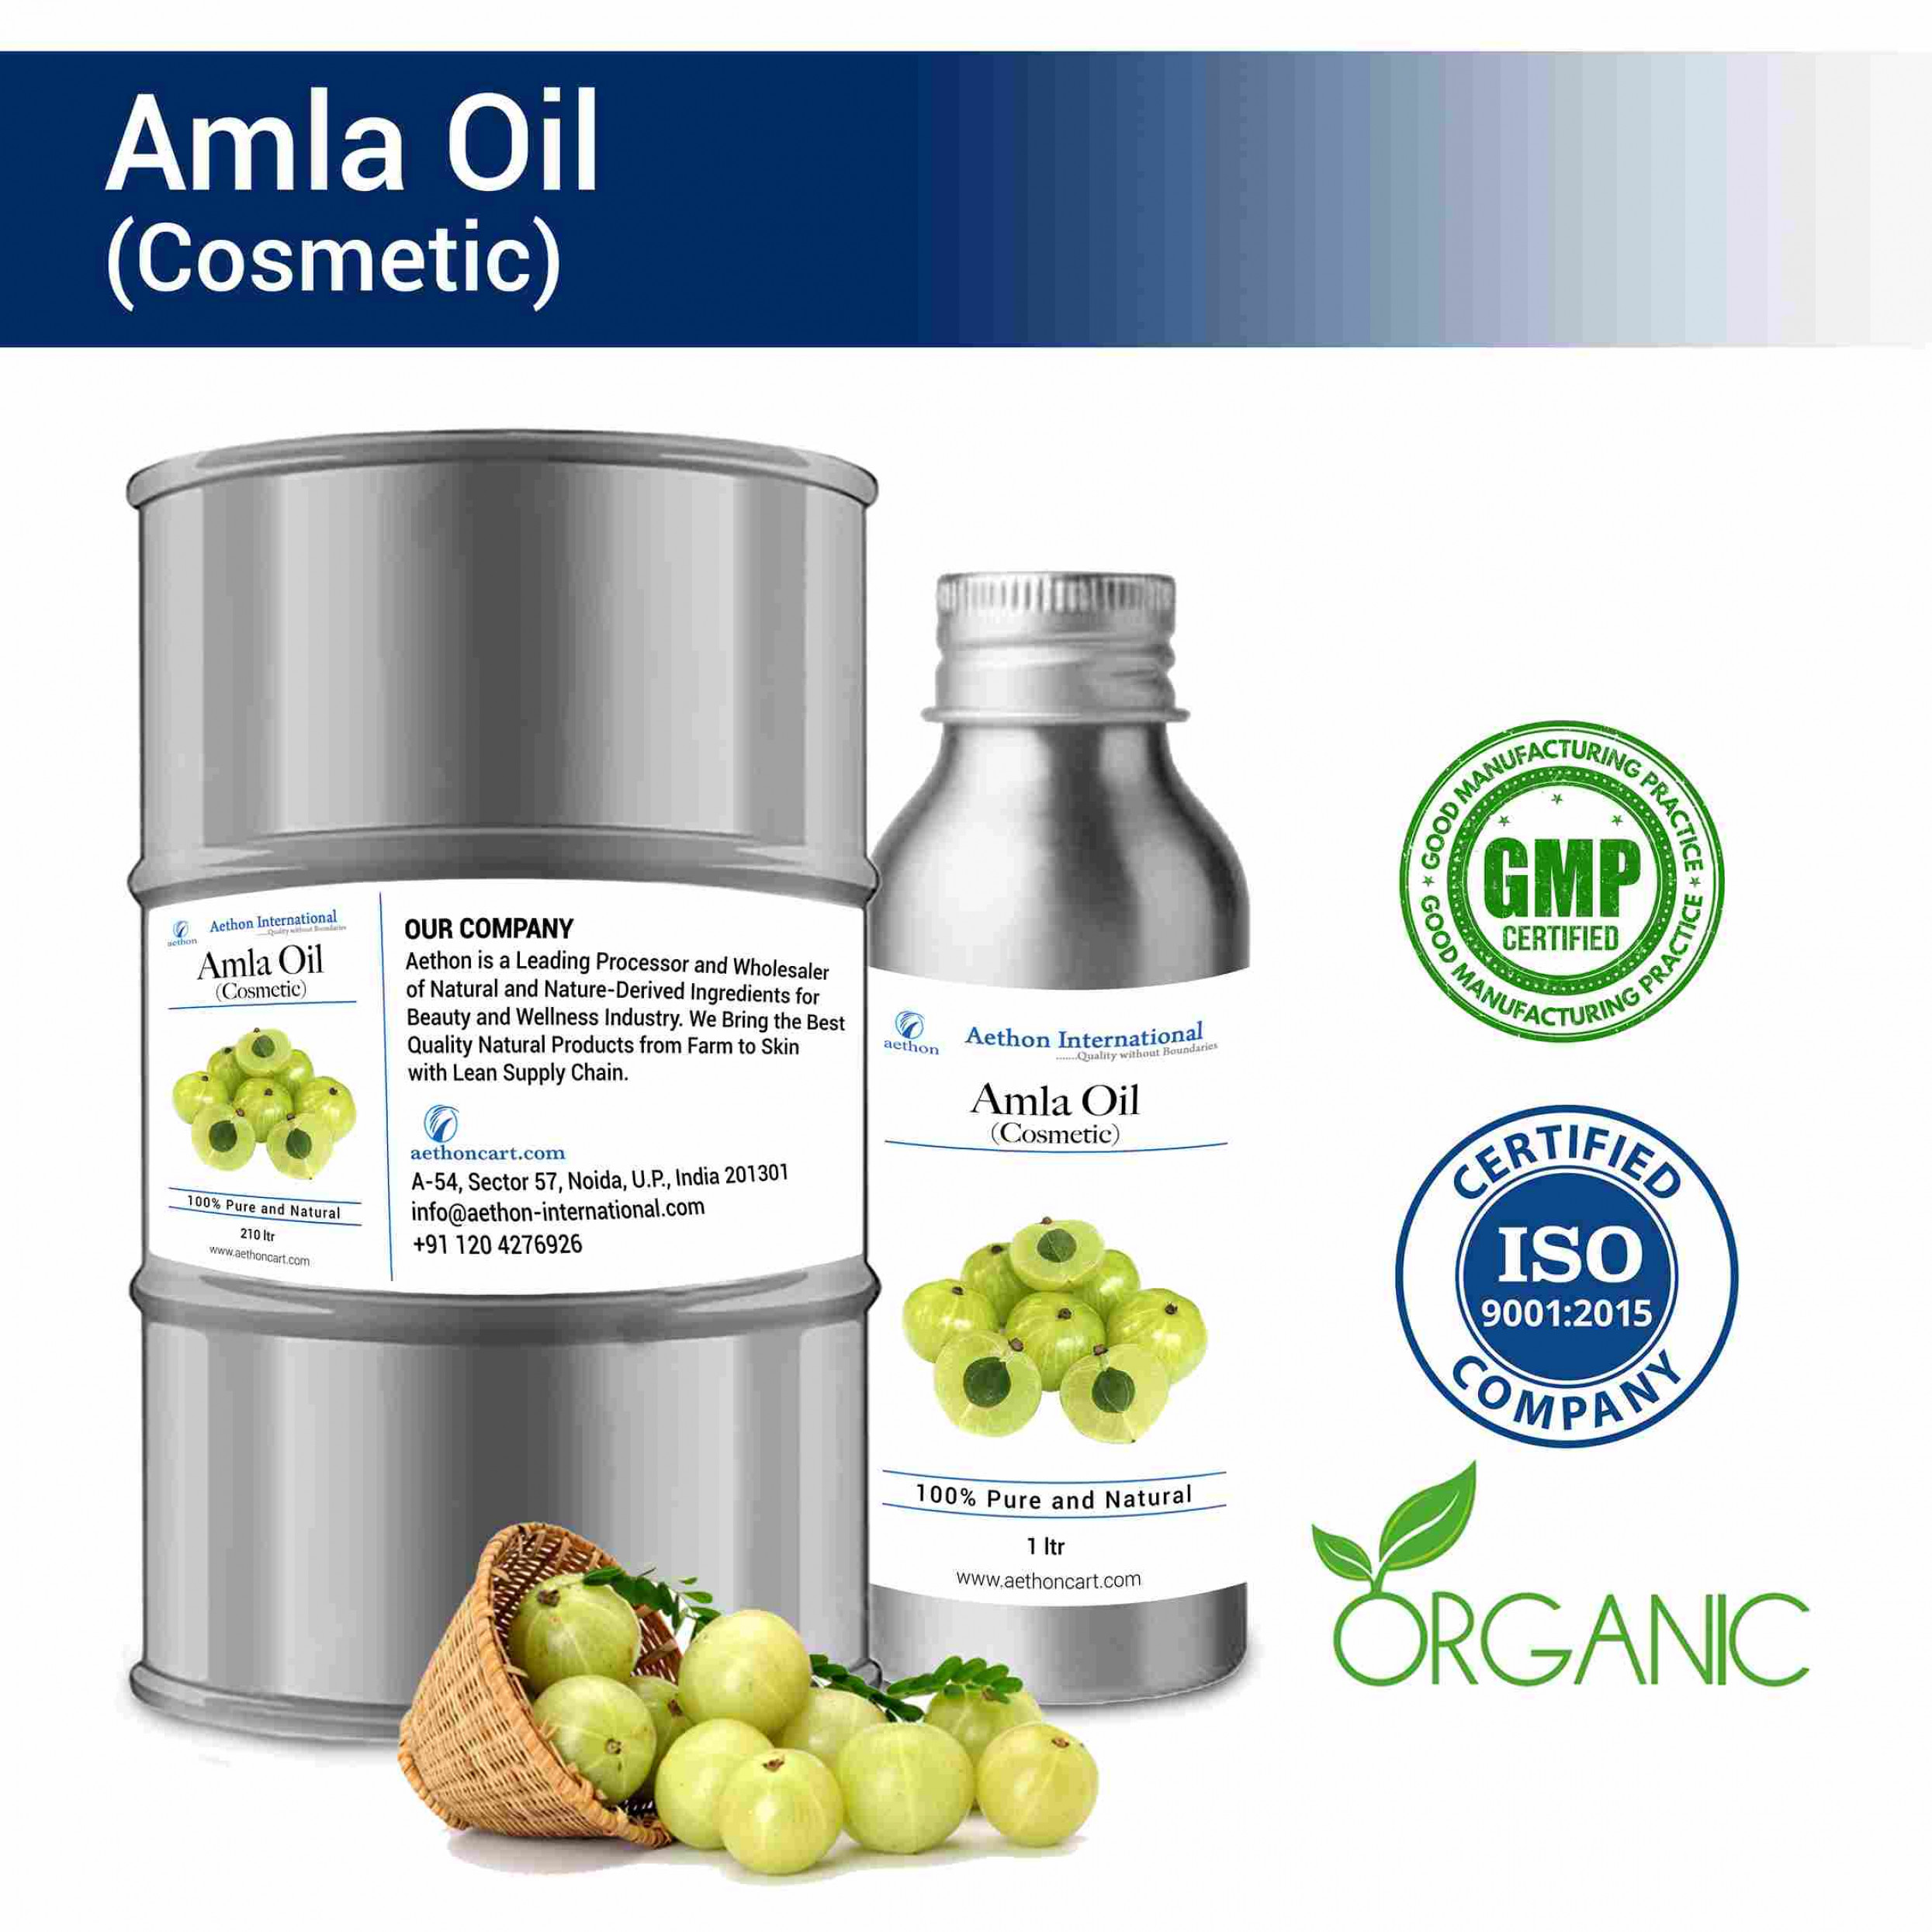 Amla Oil (Cosmetic)